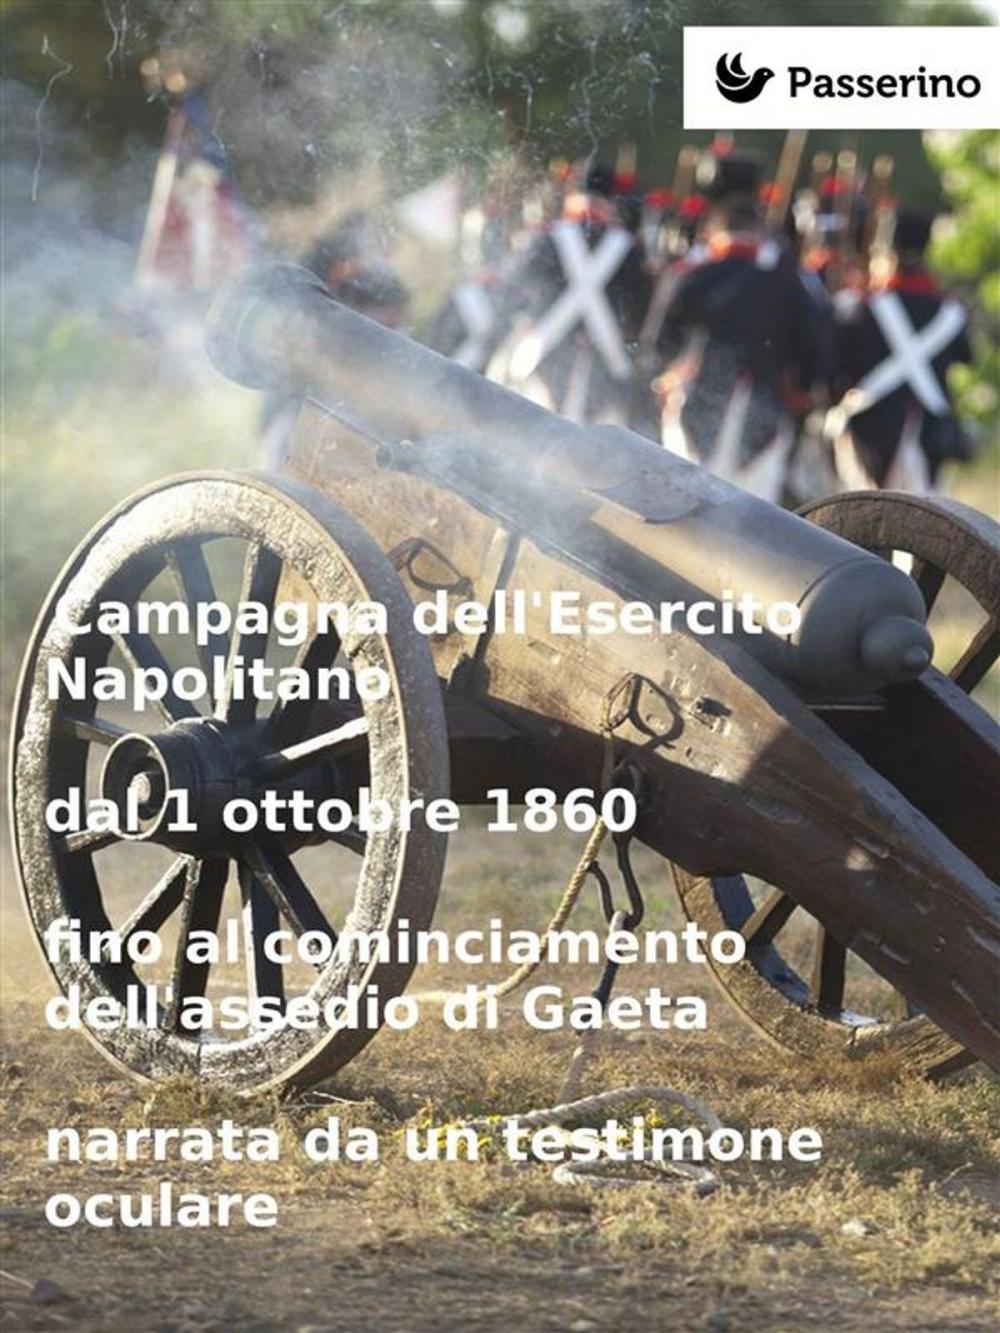 Big bigCover of Campagna dell'Esercito Napolitano dal 1 ottobre 1860 fino al cominciamento dell'assedio di Gaeta narrata da un testimone oculare